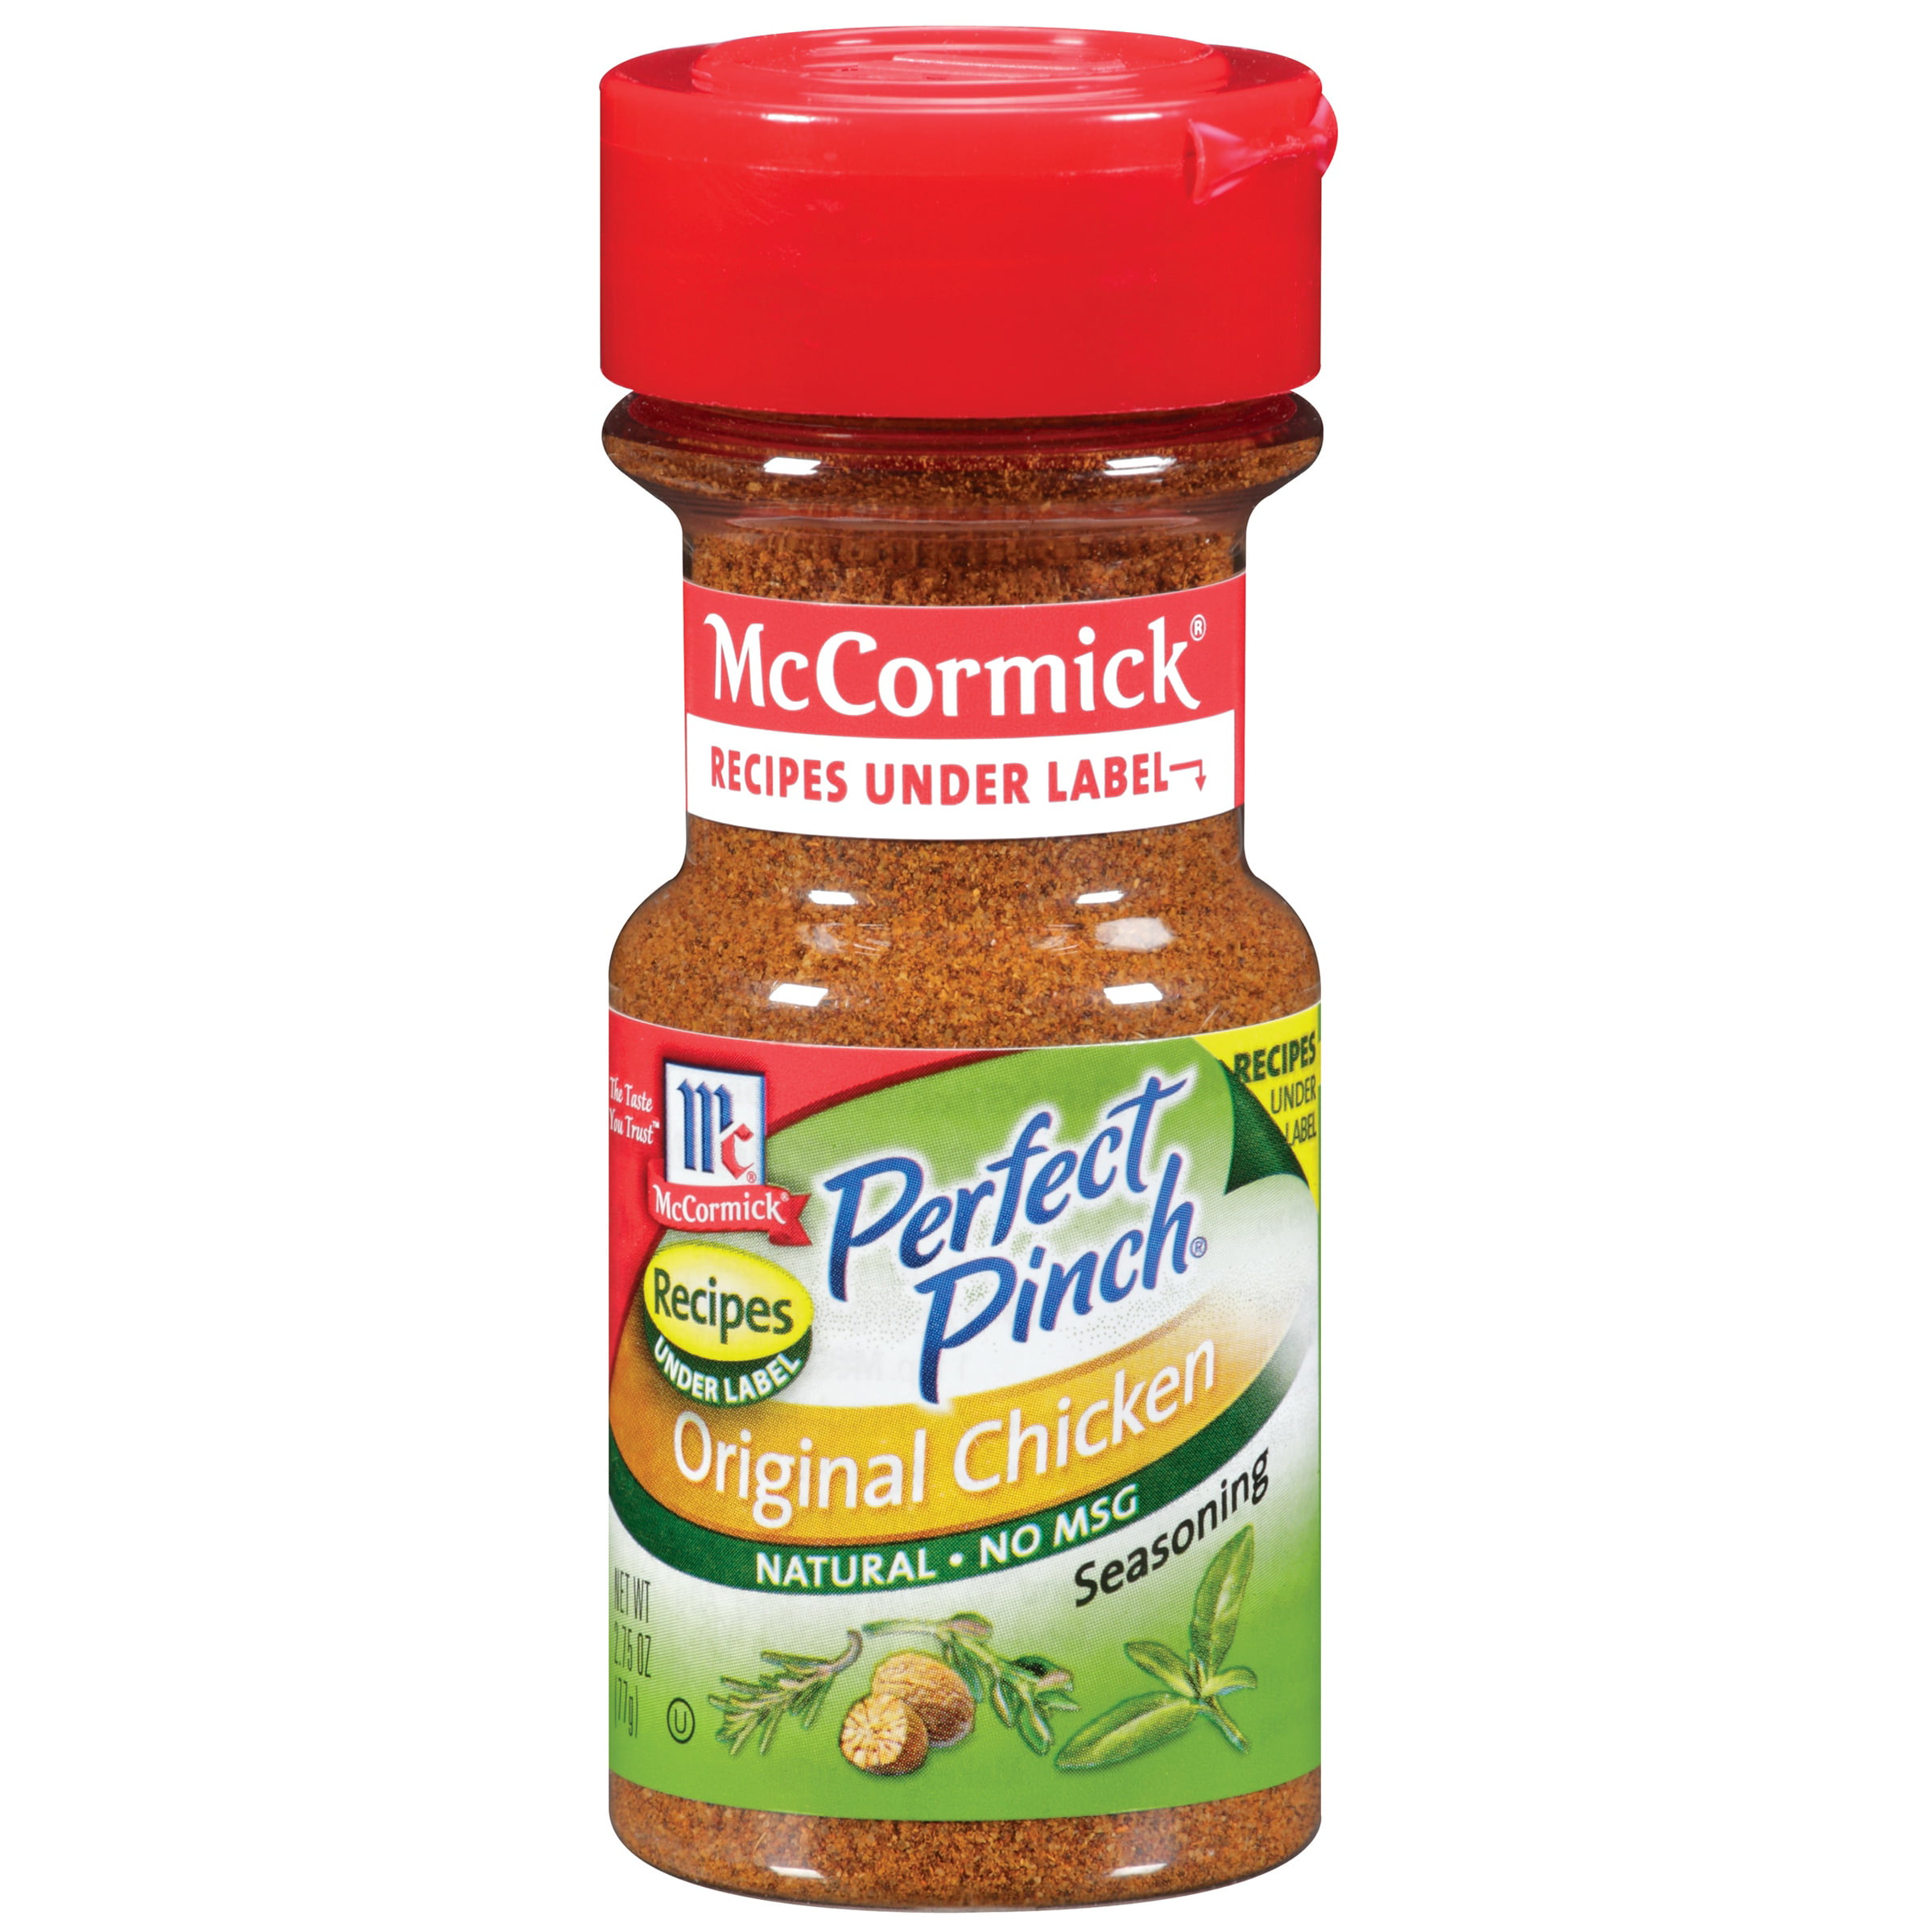 McCormick Original Chicken Seasoning, Salt, Spices & Seasonings